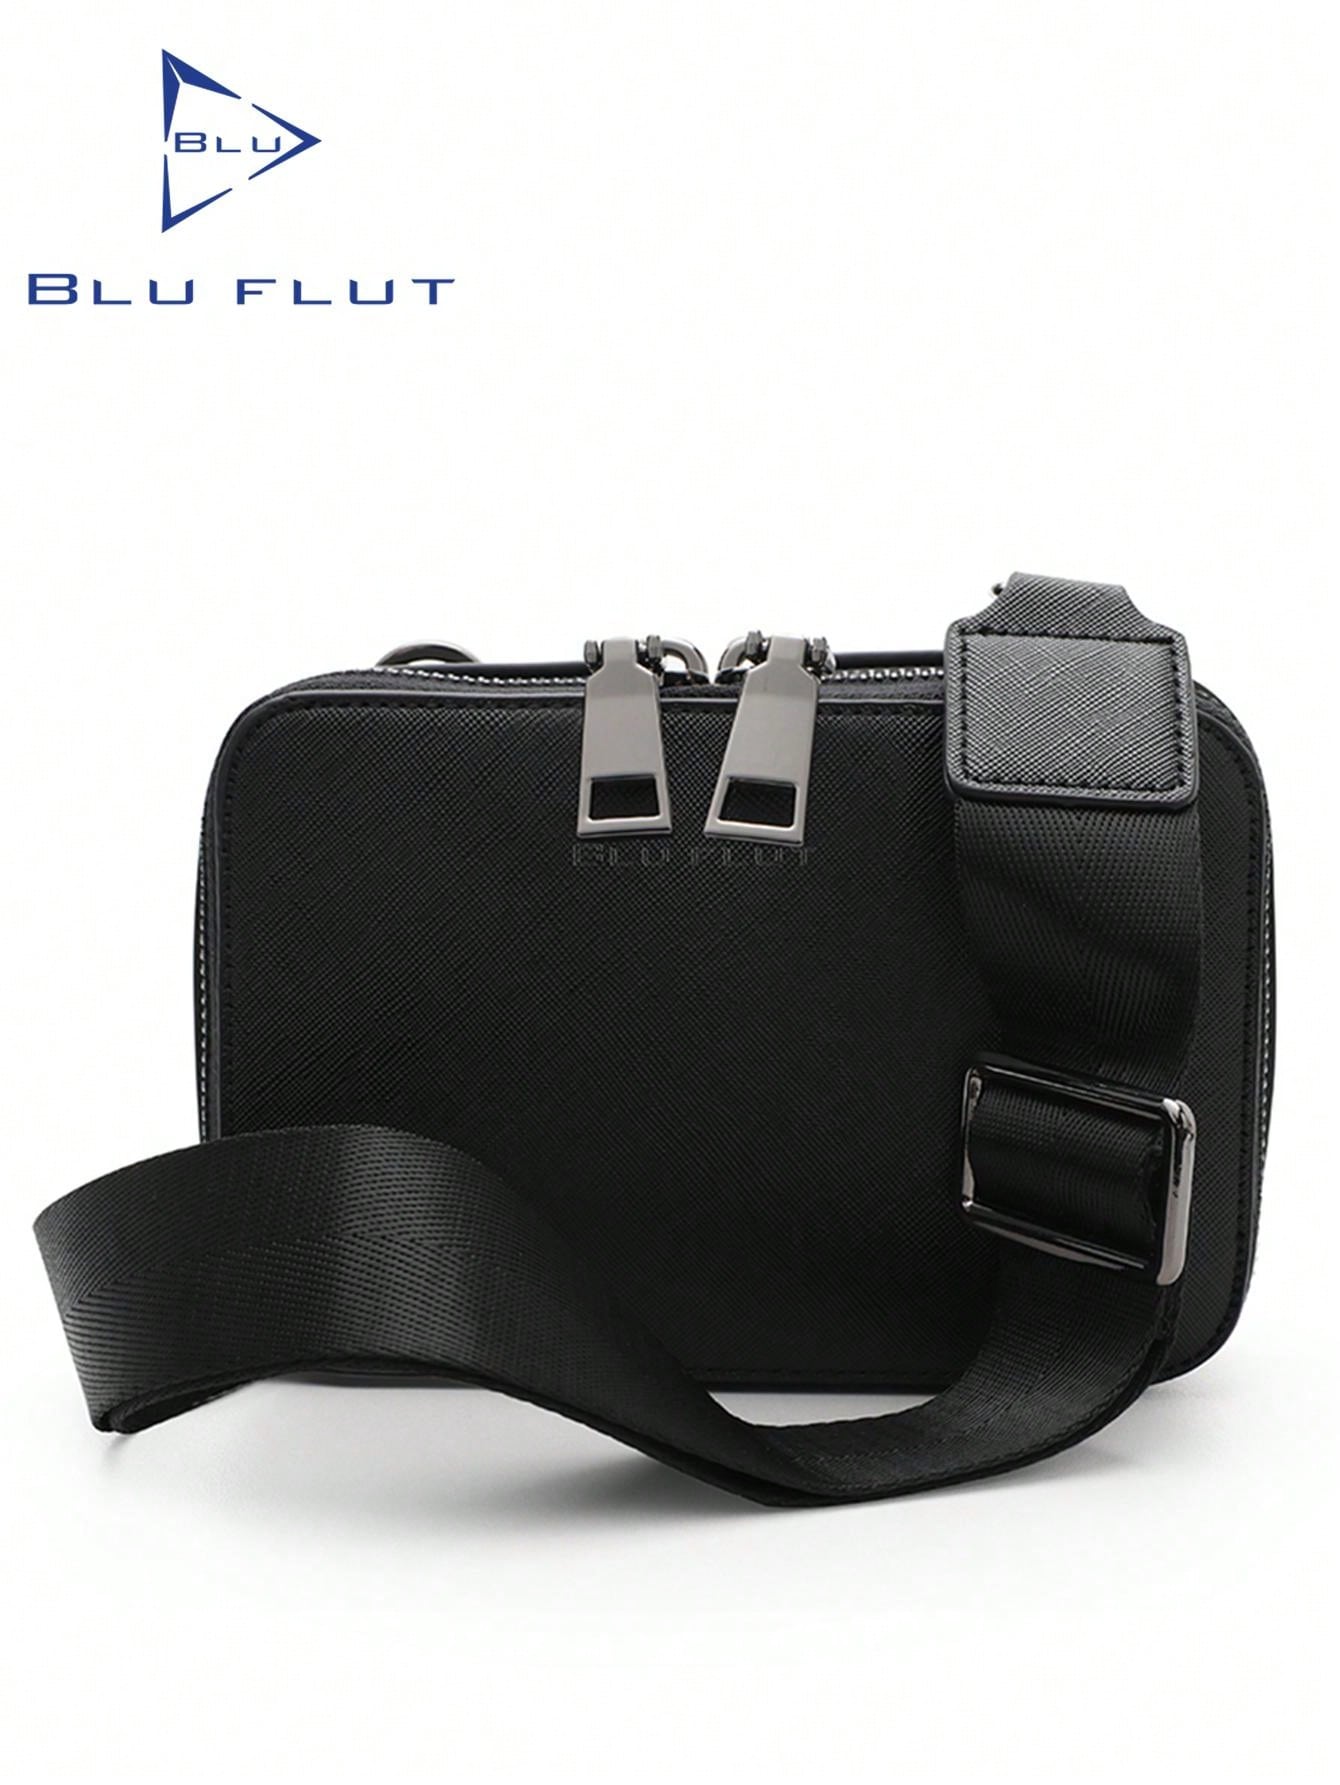 мужская нагрудная сумка westal из натуральной кожи слинг сумка через плечо мессенджер портфель на плечо Сумка через плечо Blu Flut для мужчин, черный